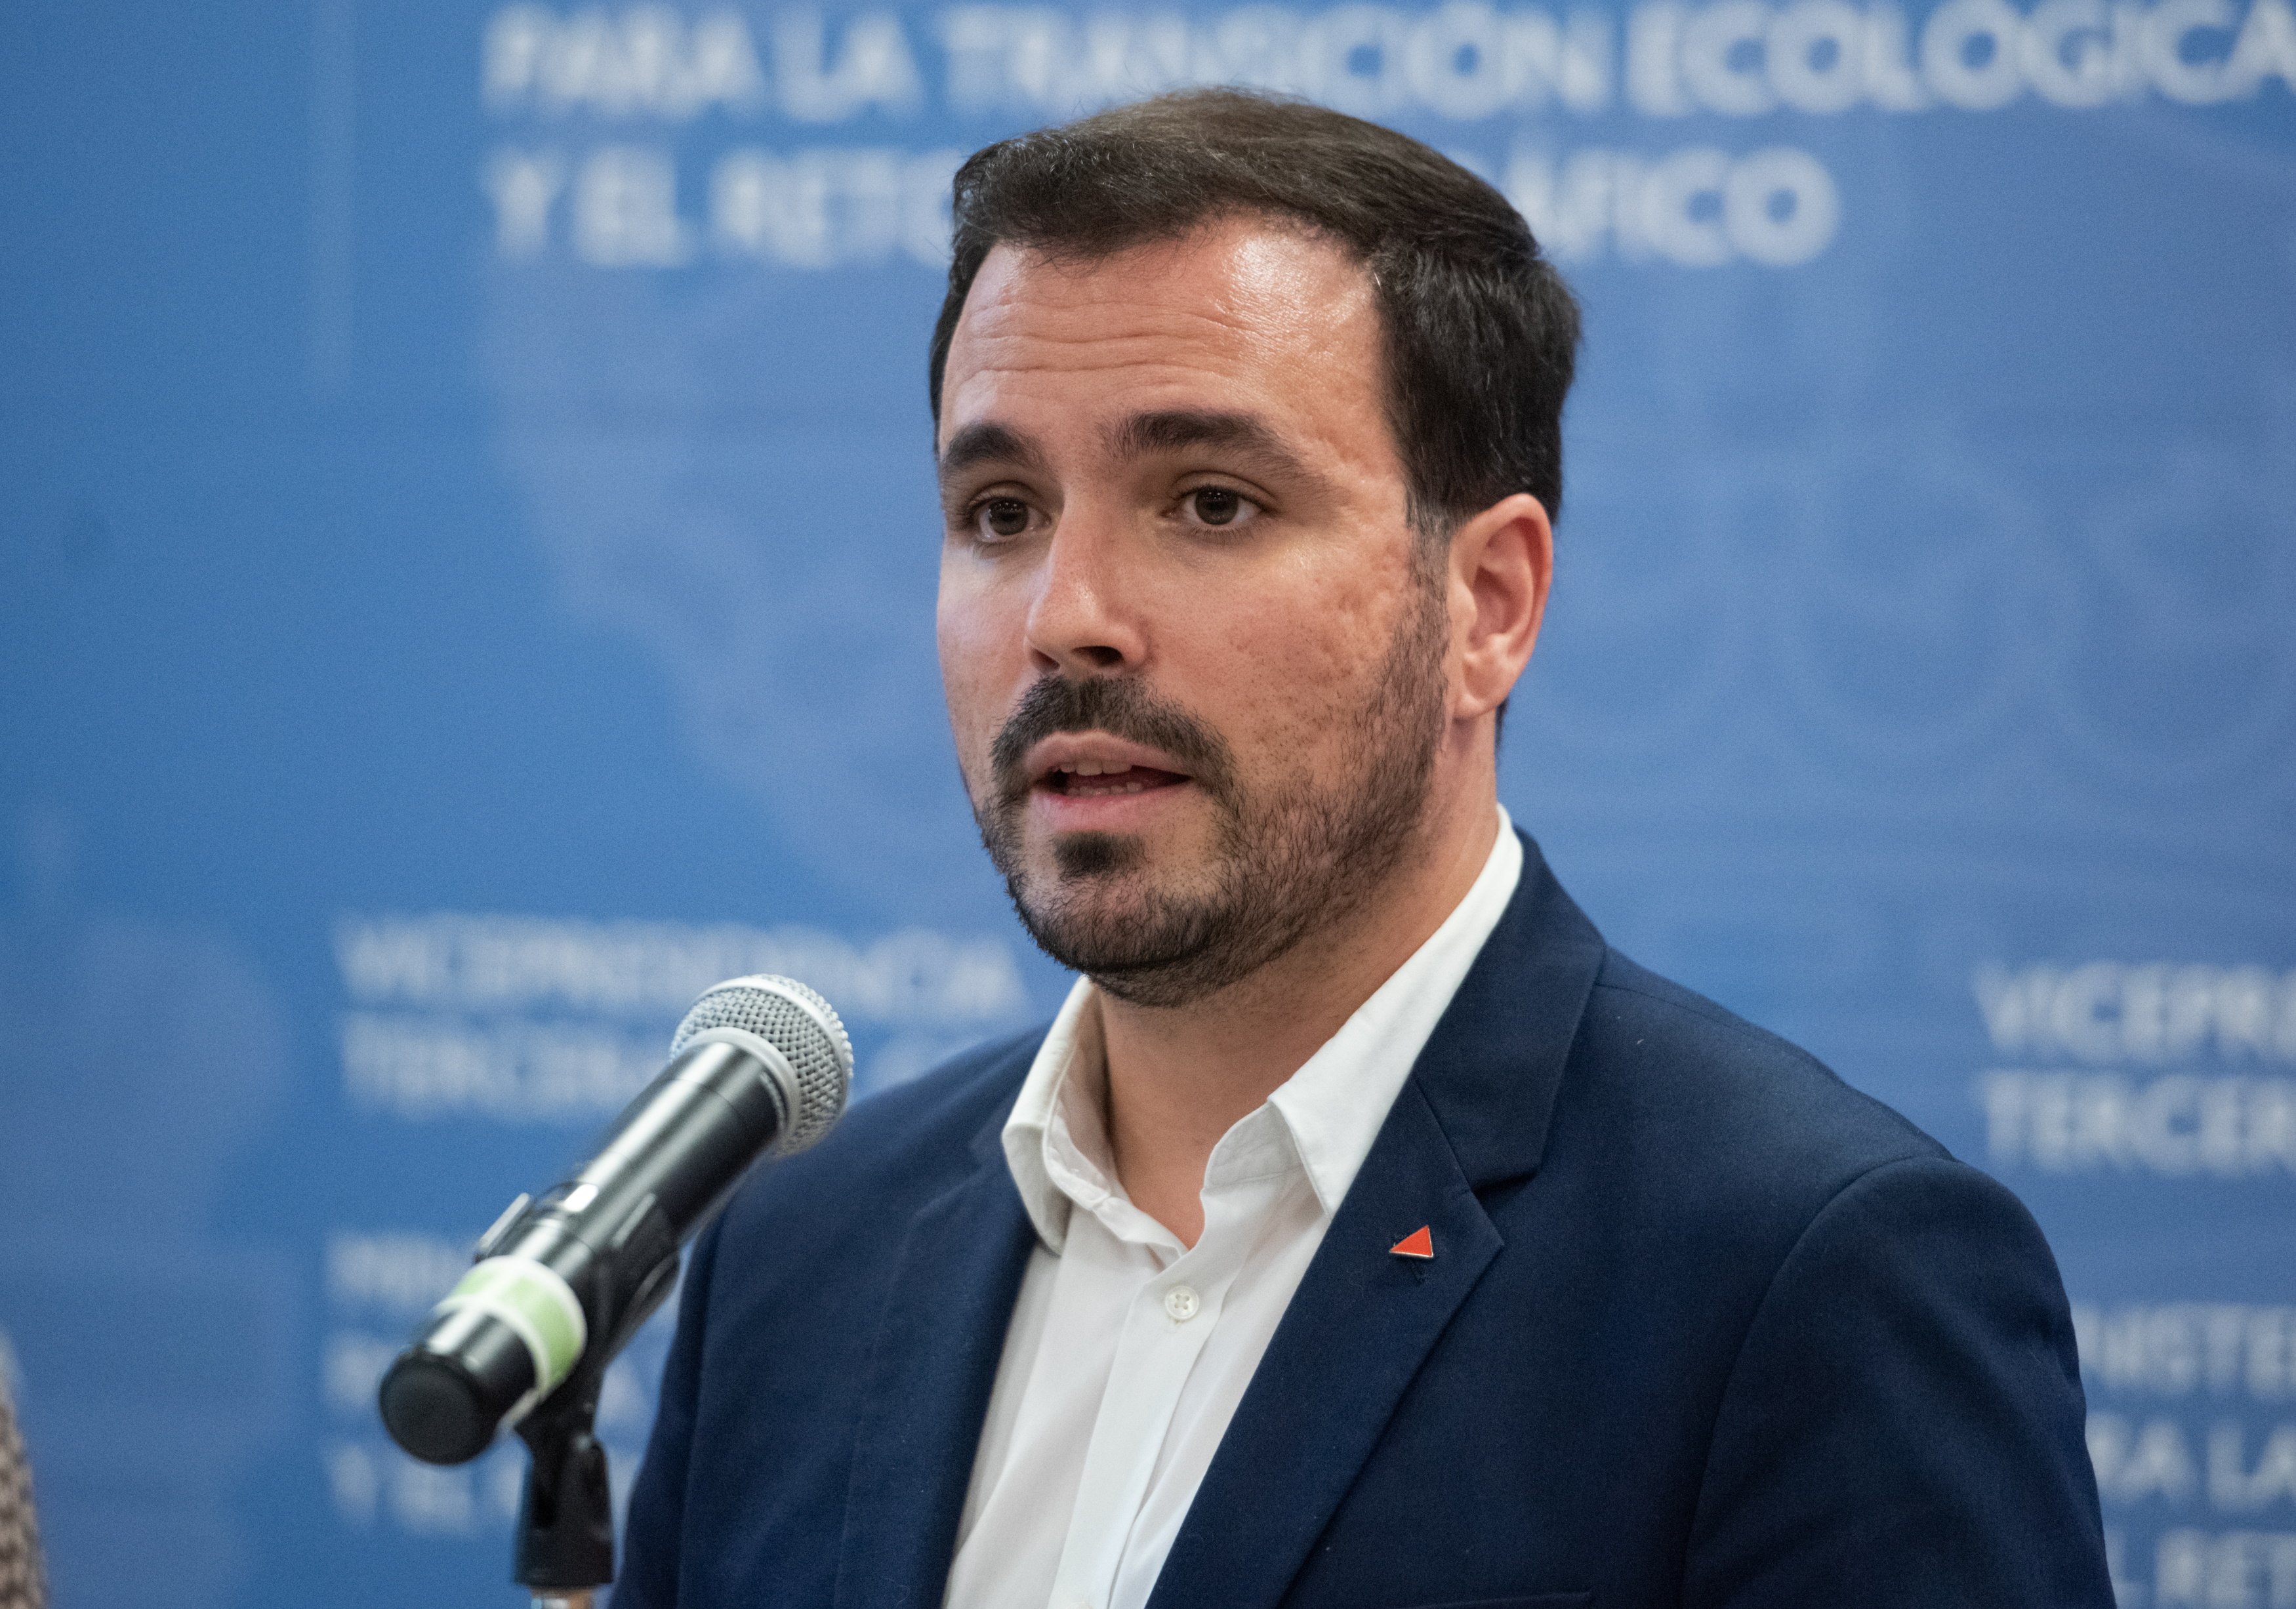 Alberto Garzón no repetirà com a candidat d'IU a les eleccions generals del 23-J